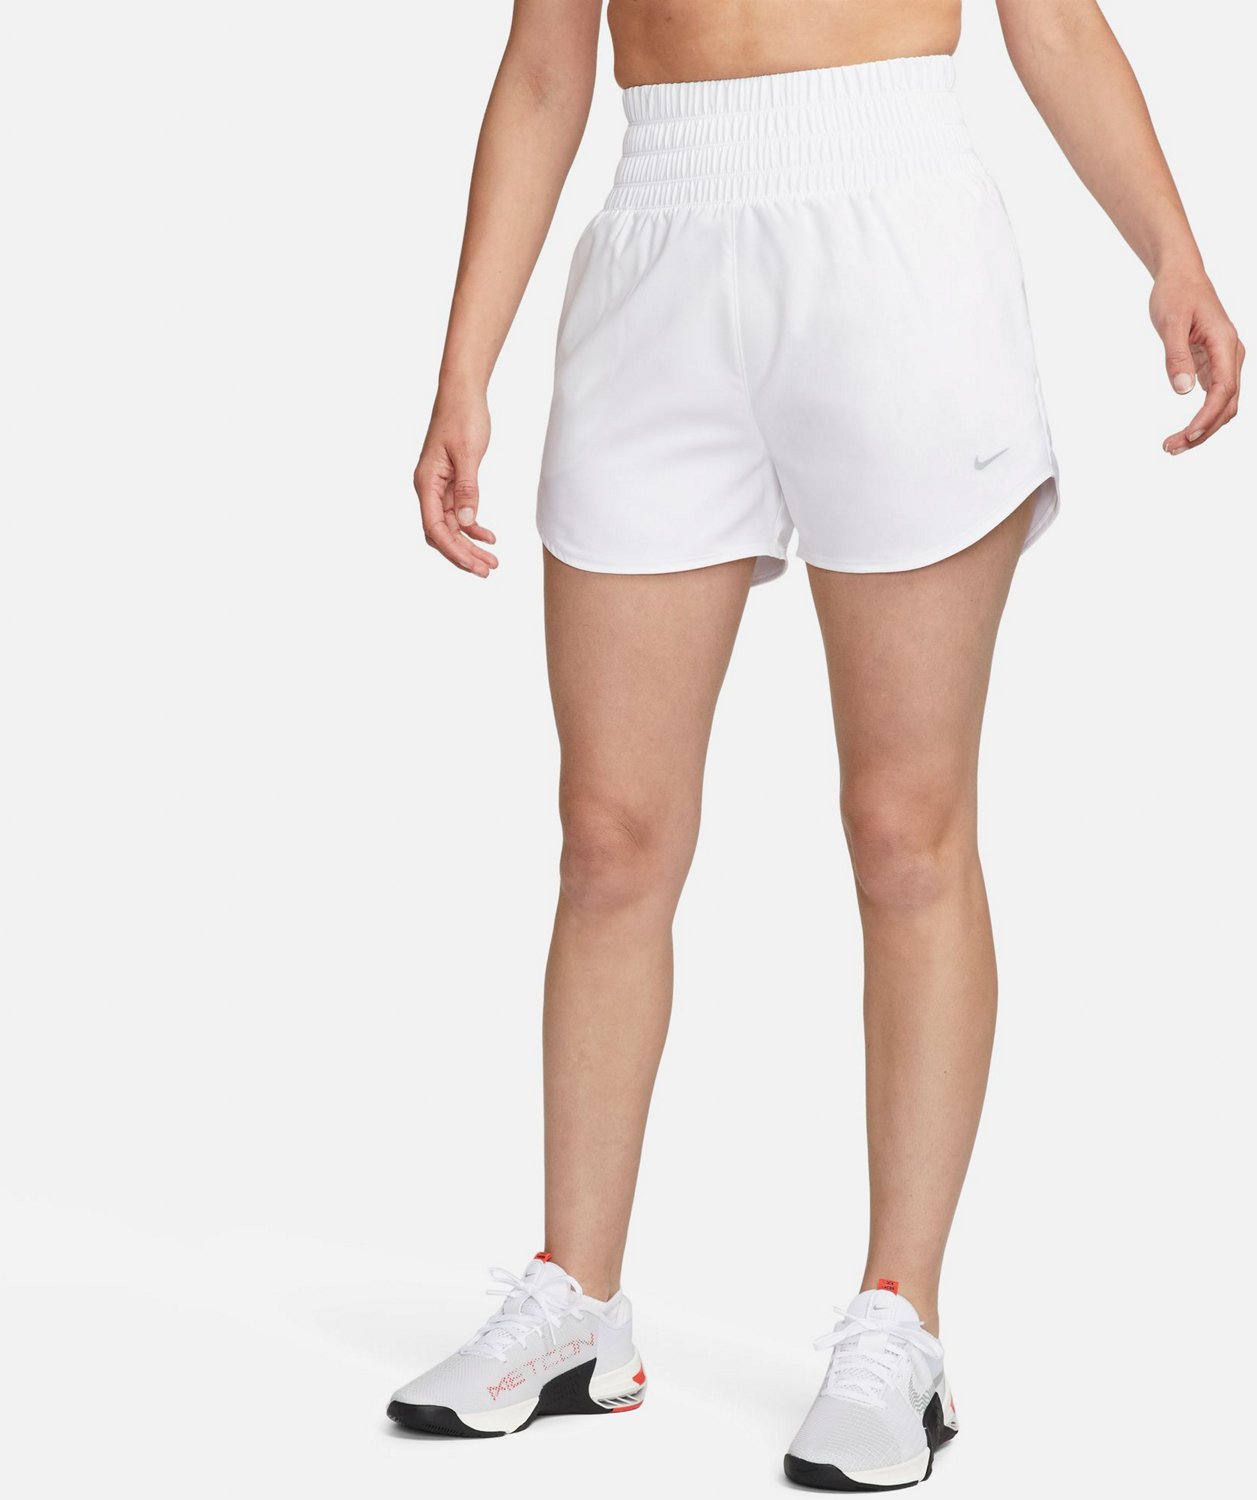 Nike Womens Prima Dri-FIT Ultra High-Rise Shorts 3in